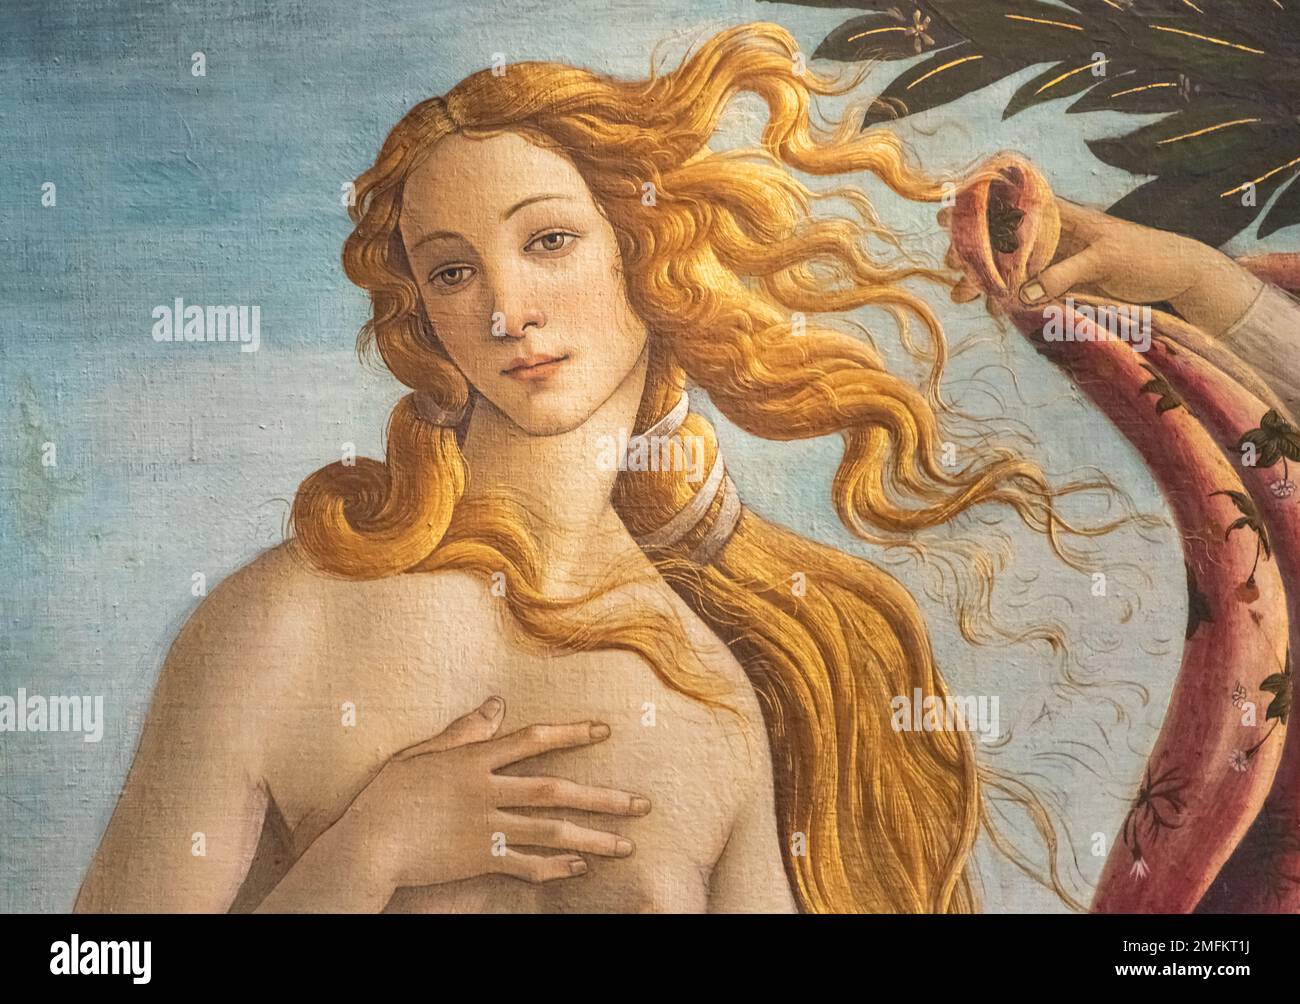 Gros plan sur le portrait de Vénus dans le chef-d'œuvre de Botticelli "la naissance de Vénus" Banque D'Images